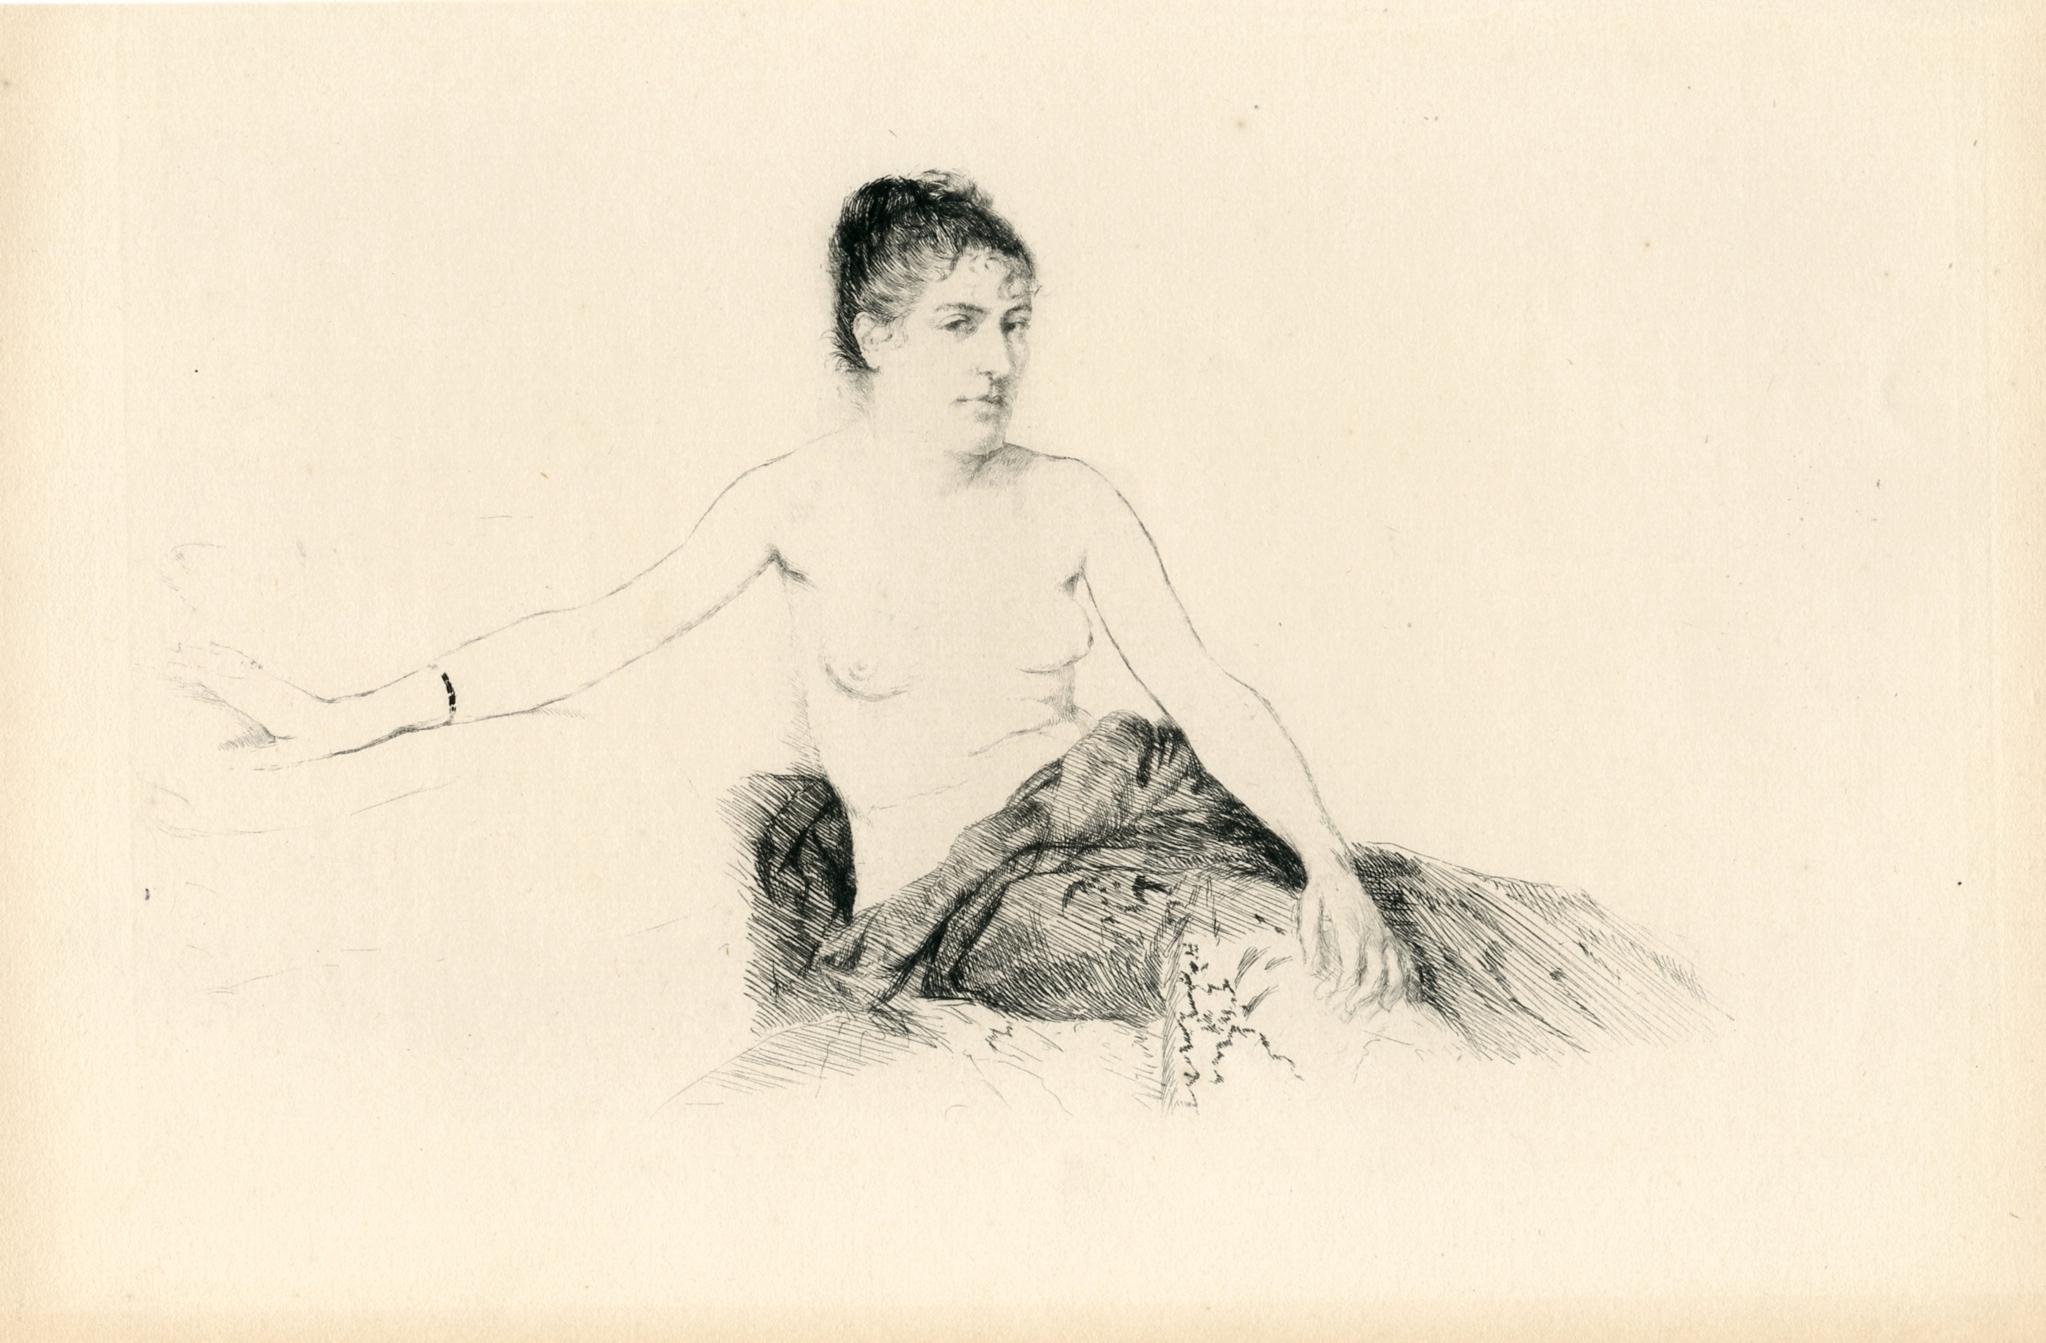 Giuseppe De Nittis Portrait Print - "Femme assise sur un canape" original etching